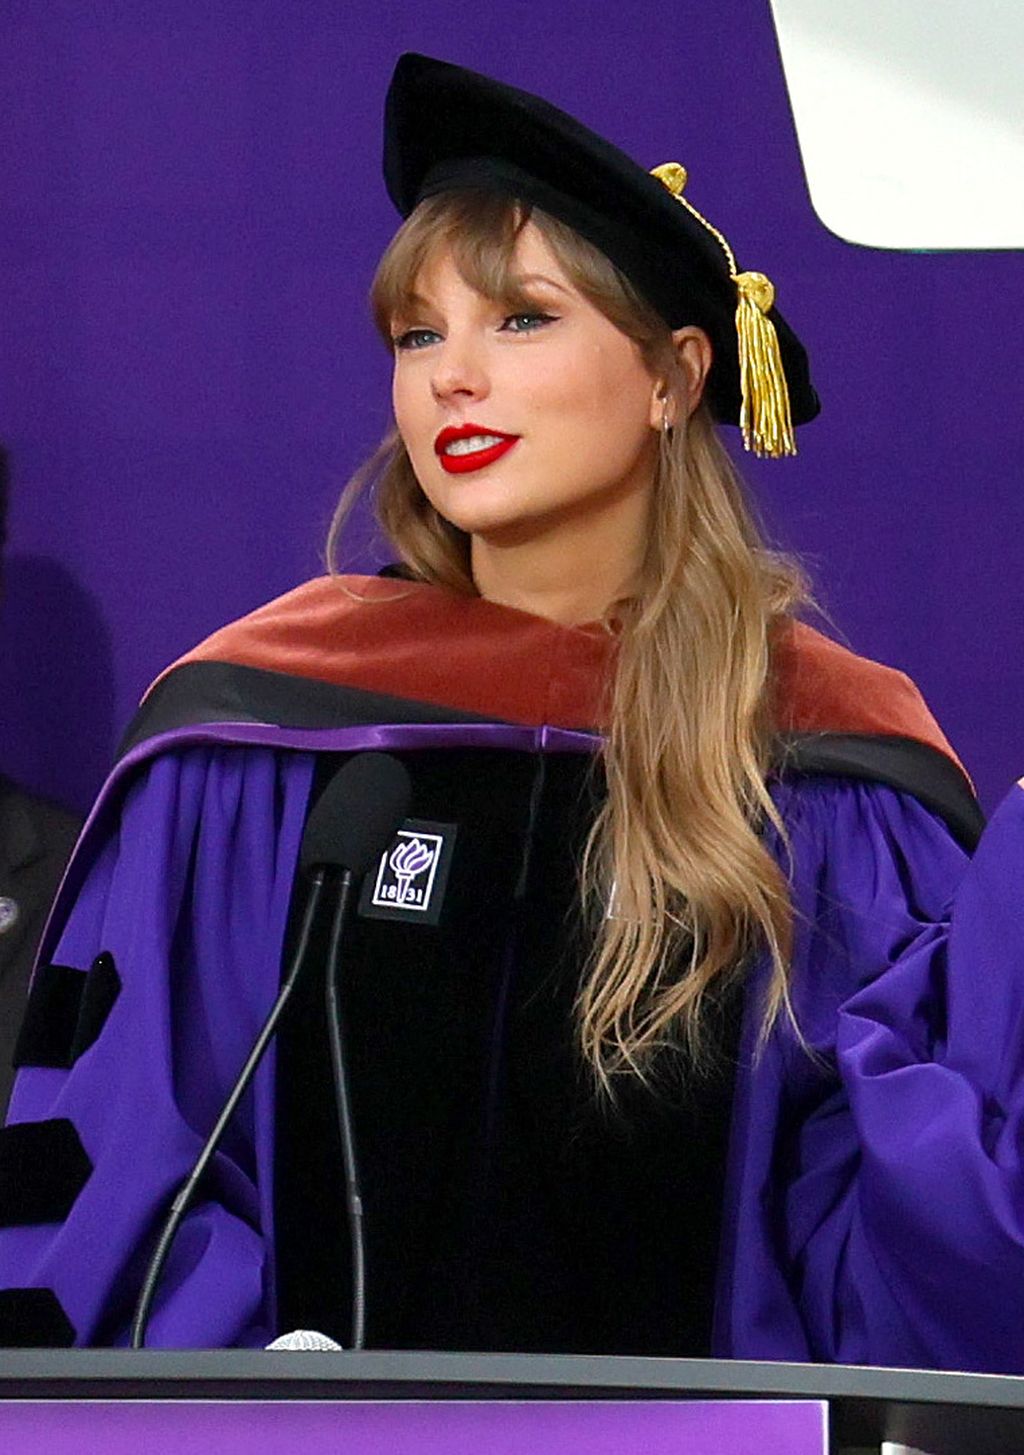 Penyanyi Taylor Swift menyampaikan sambutan setelah mendapat gelar doktor kehormatan di bidang seni murni dari New York University (NYU) dalam rangkaian acara wisuda angkatan 2022 NYU di Yankee Stadium, New York City, AS, Rabu (18/5/2022).